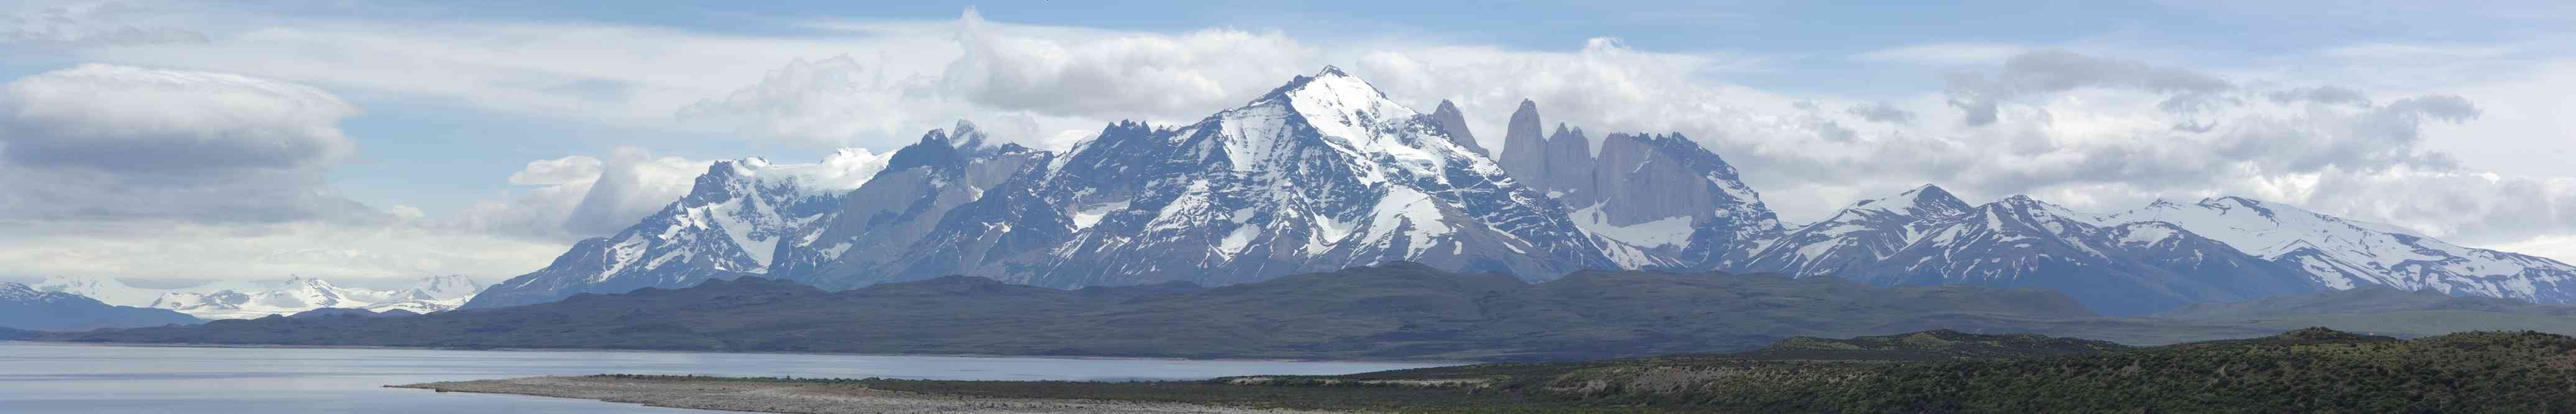 Le massif du Paine vu des rives du lac Sarmiento, le 13 novembre 2012